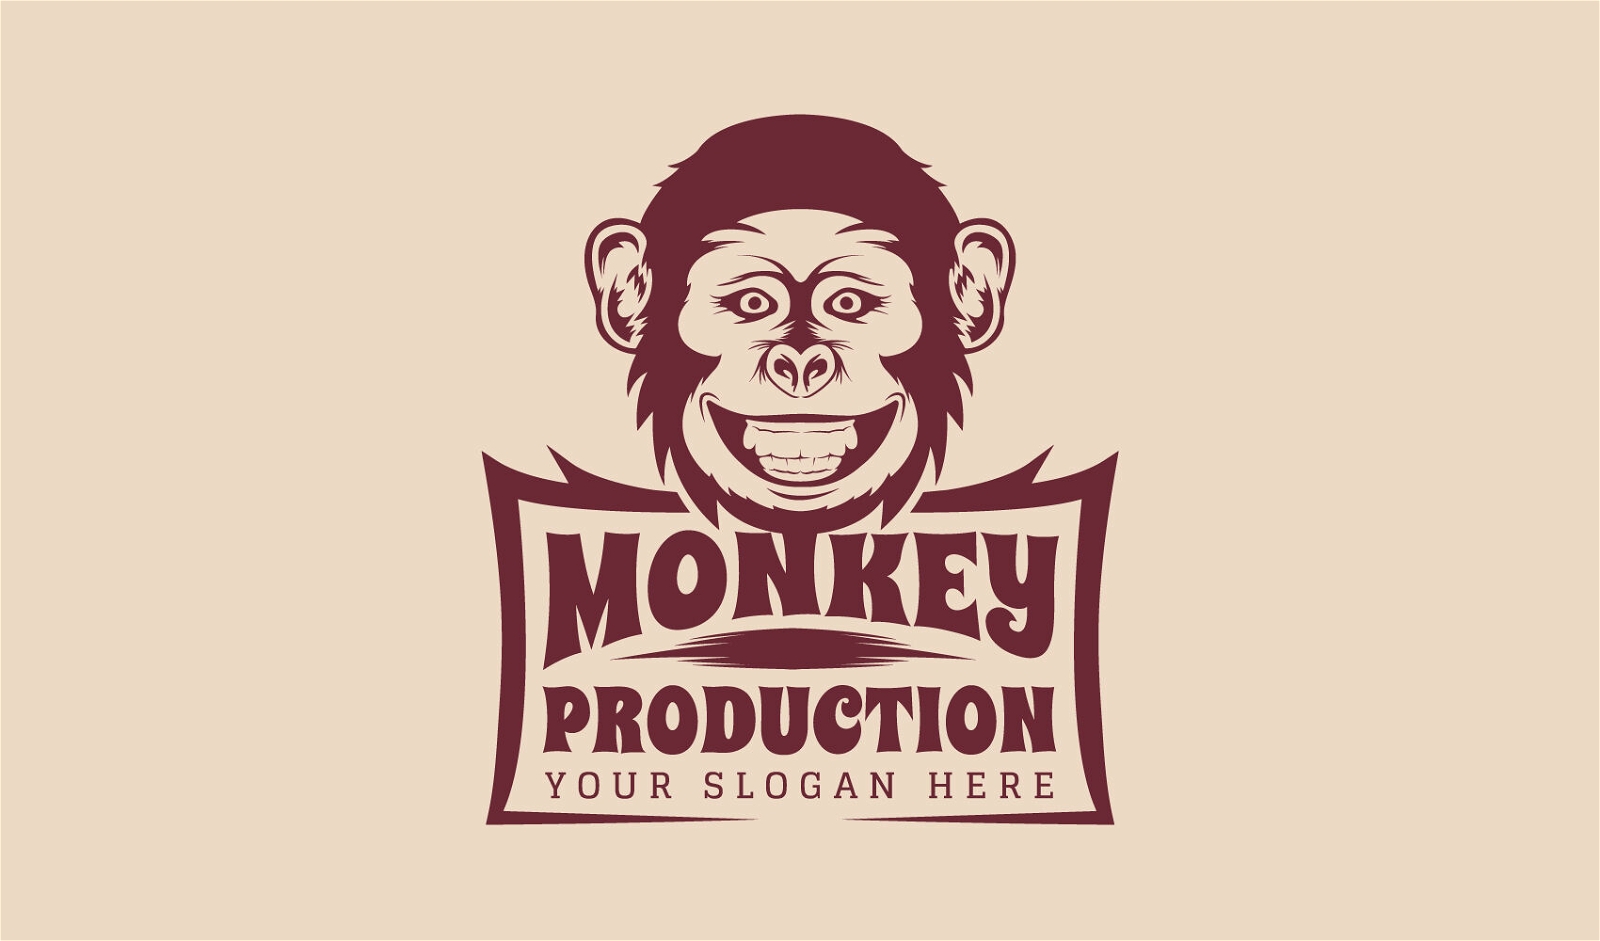 Diseño de plantilla de logotipo de mono